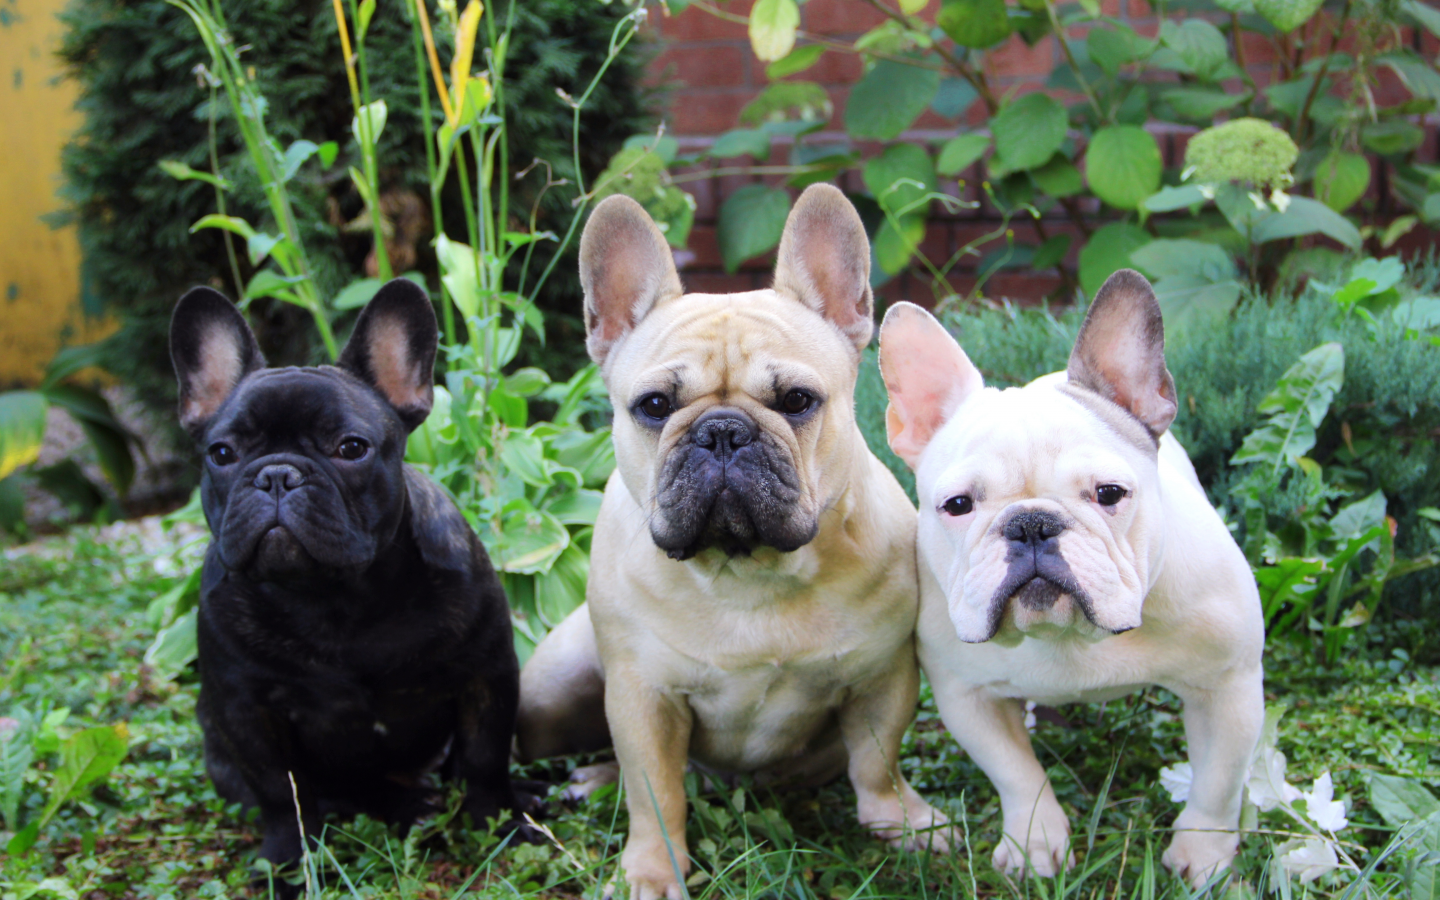 трава, три собаки, французский бульдог, french bulldog, лето